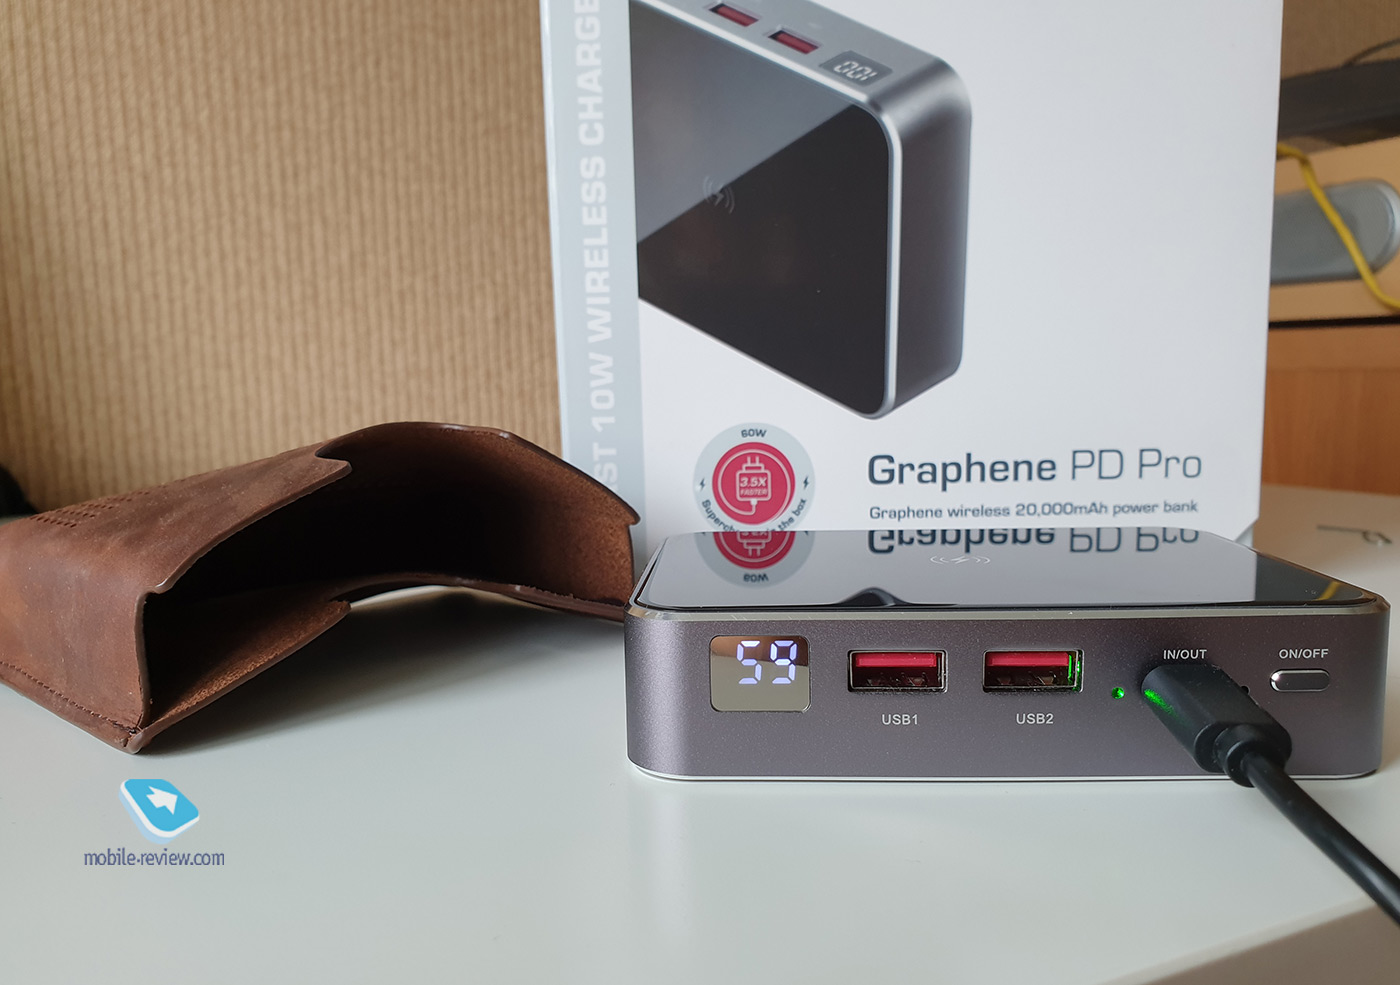 Выбираем пауэрбанк: графеновый внешний аккумулятор GRAPHENE PD PRO с реальной ёмкостью 20 000 мАч